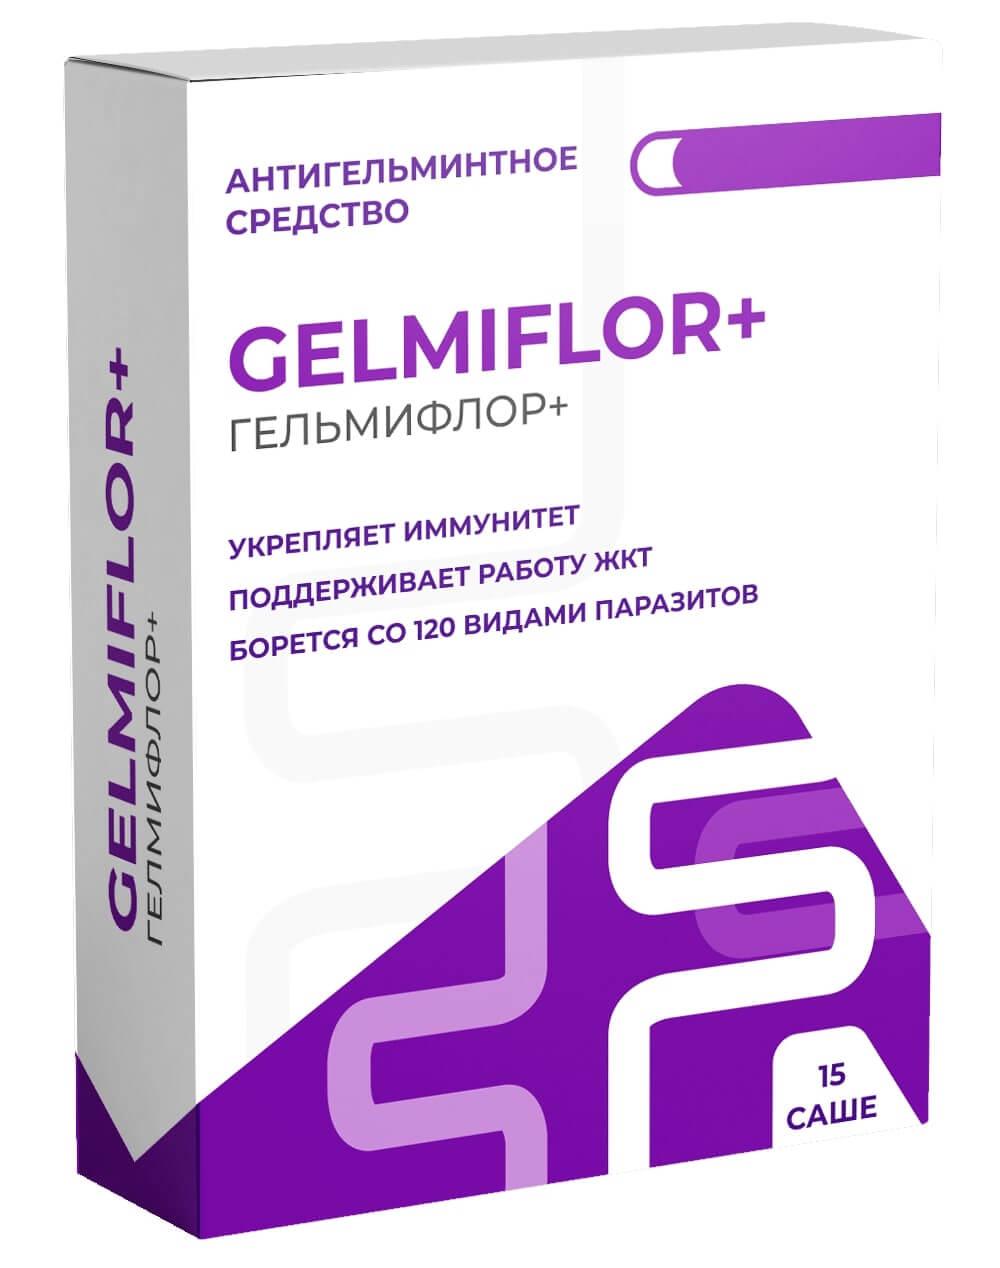 Аптека: гельмифлор во Владивостоке